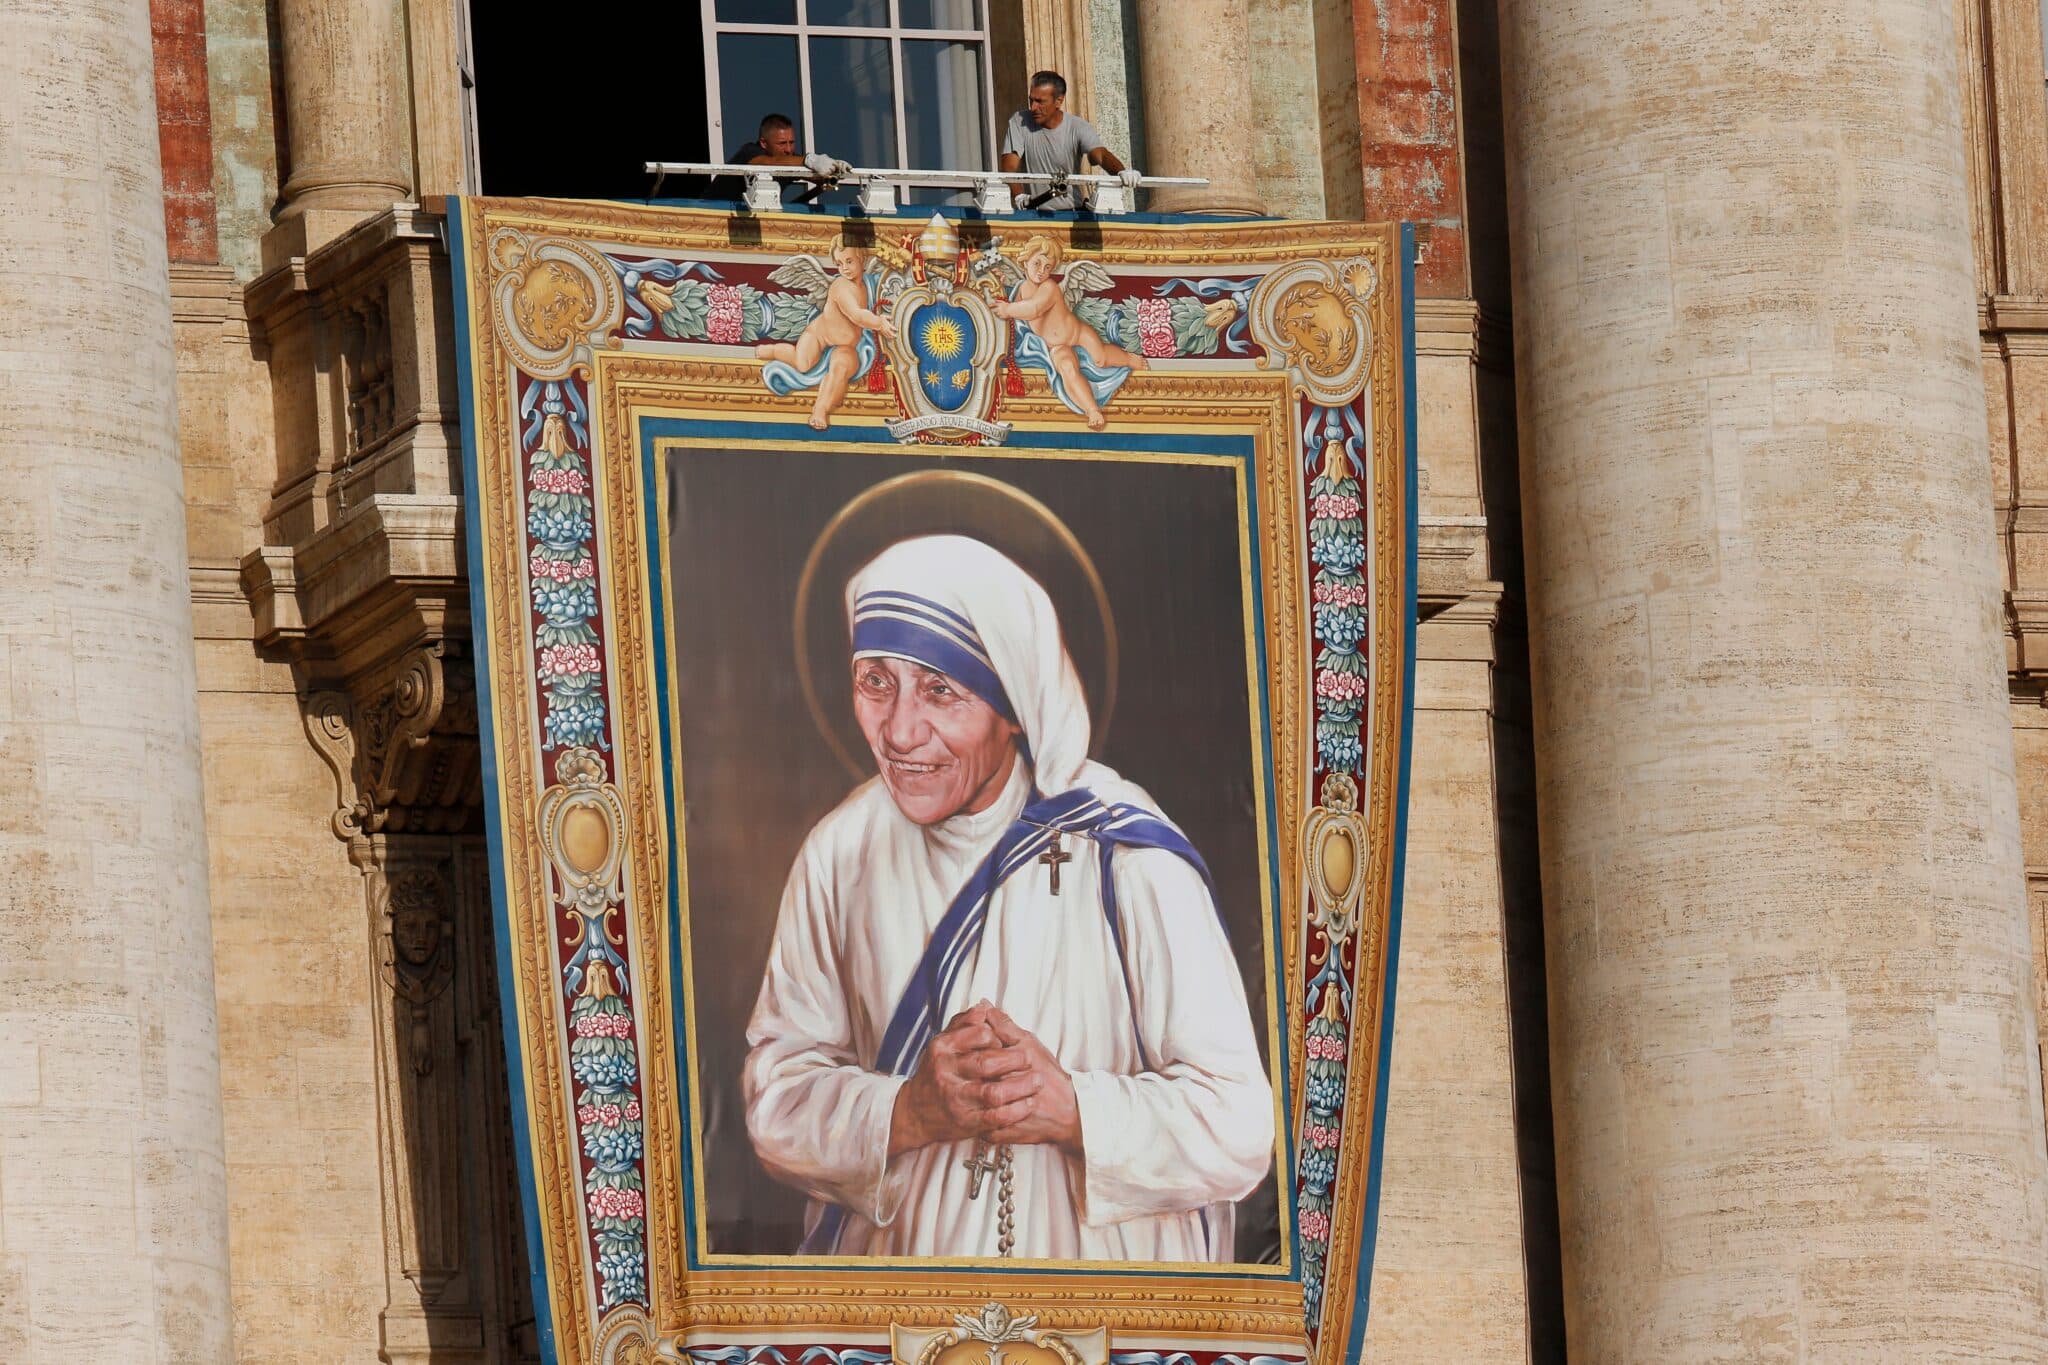 Mother Teresa at the Vatican